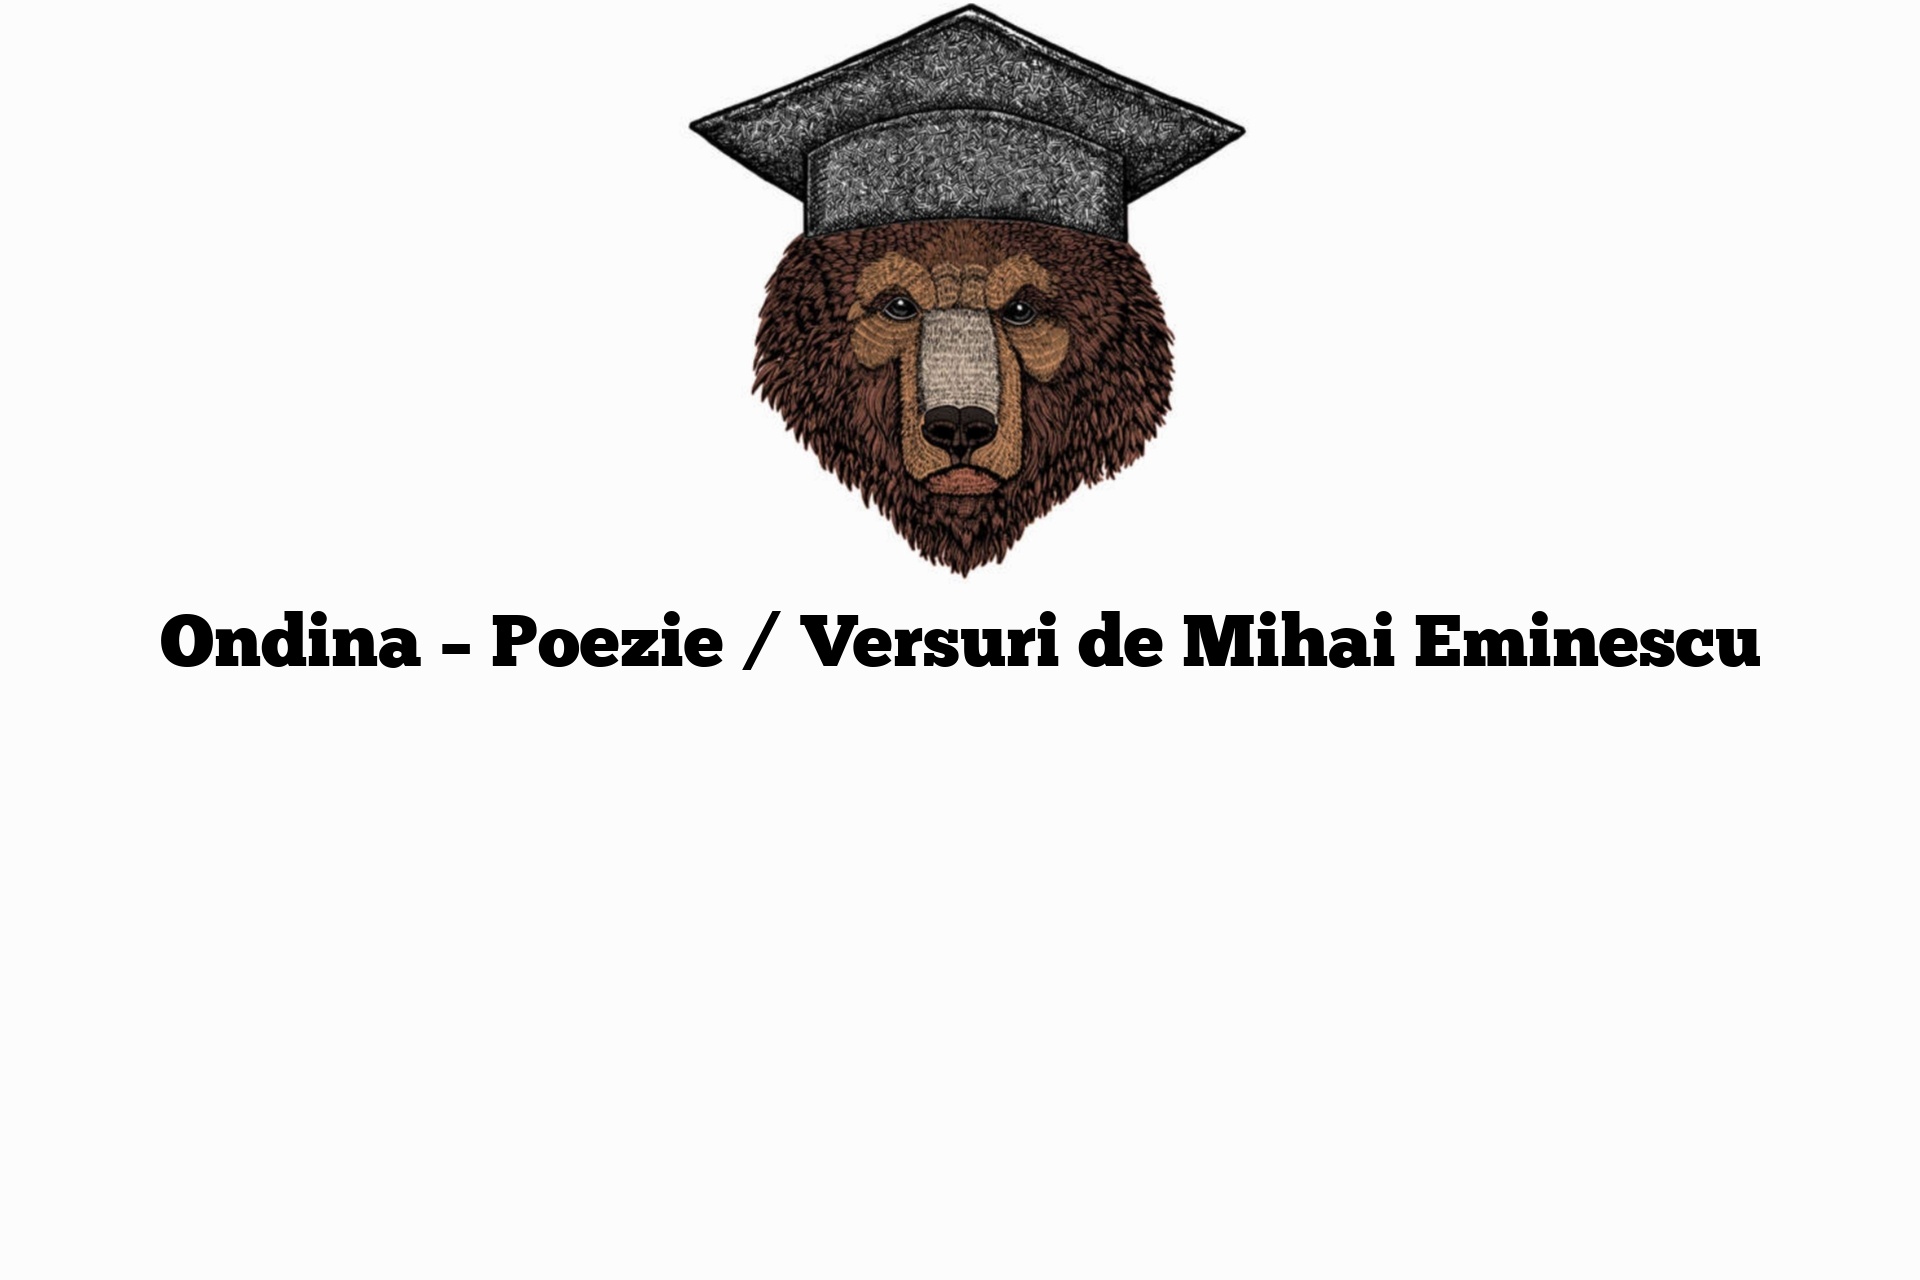 Paving Feasibility Dependence Ondina - Poezie / Versuri de Mihai Eminescu - Corect Gramatical